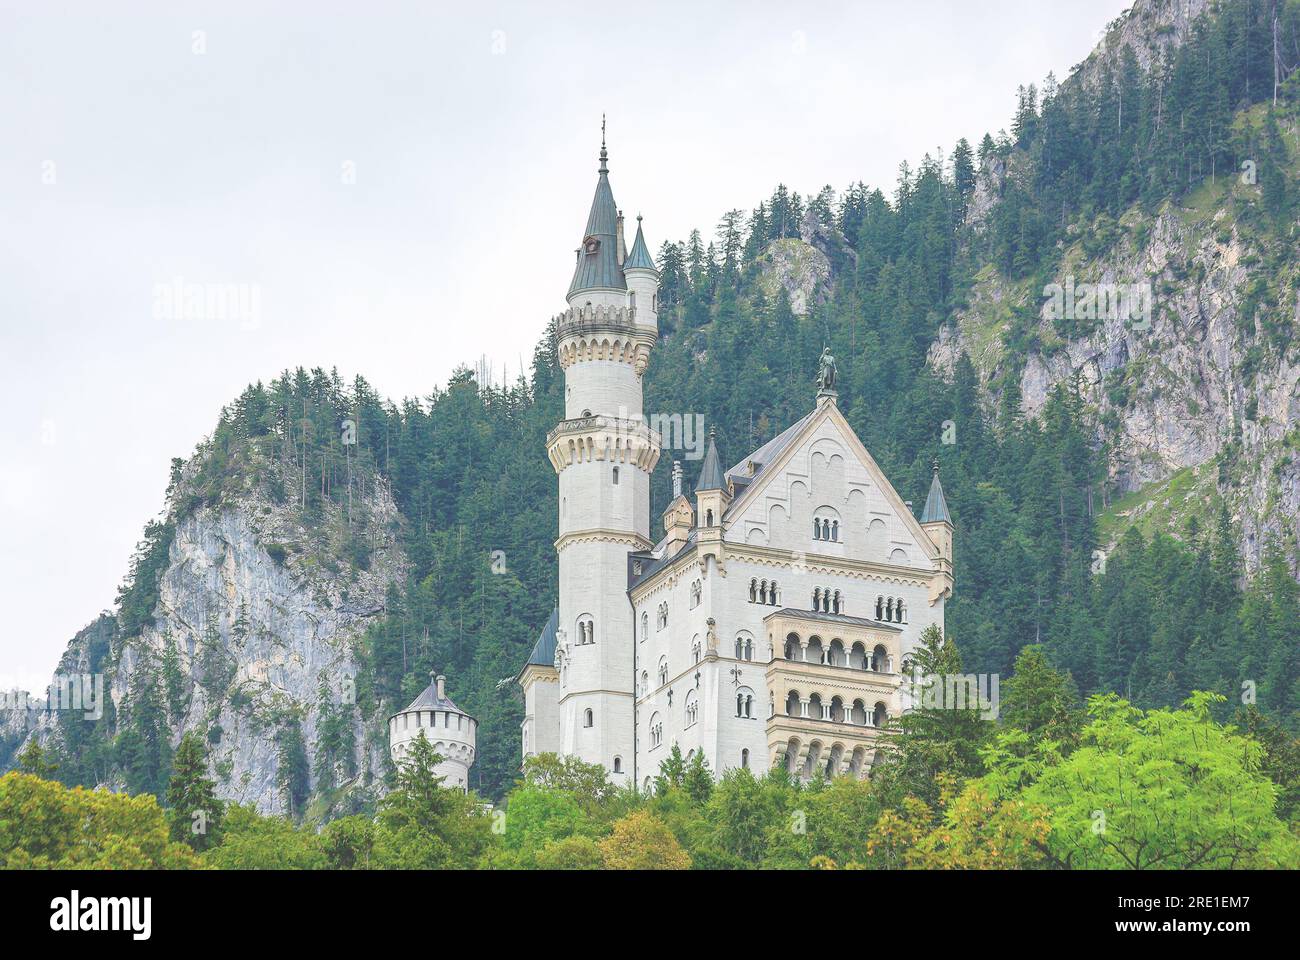 Neuschwanstein Castle in Schwangau, Bavaria, Germany, taken from public ground. Stock Photo